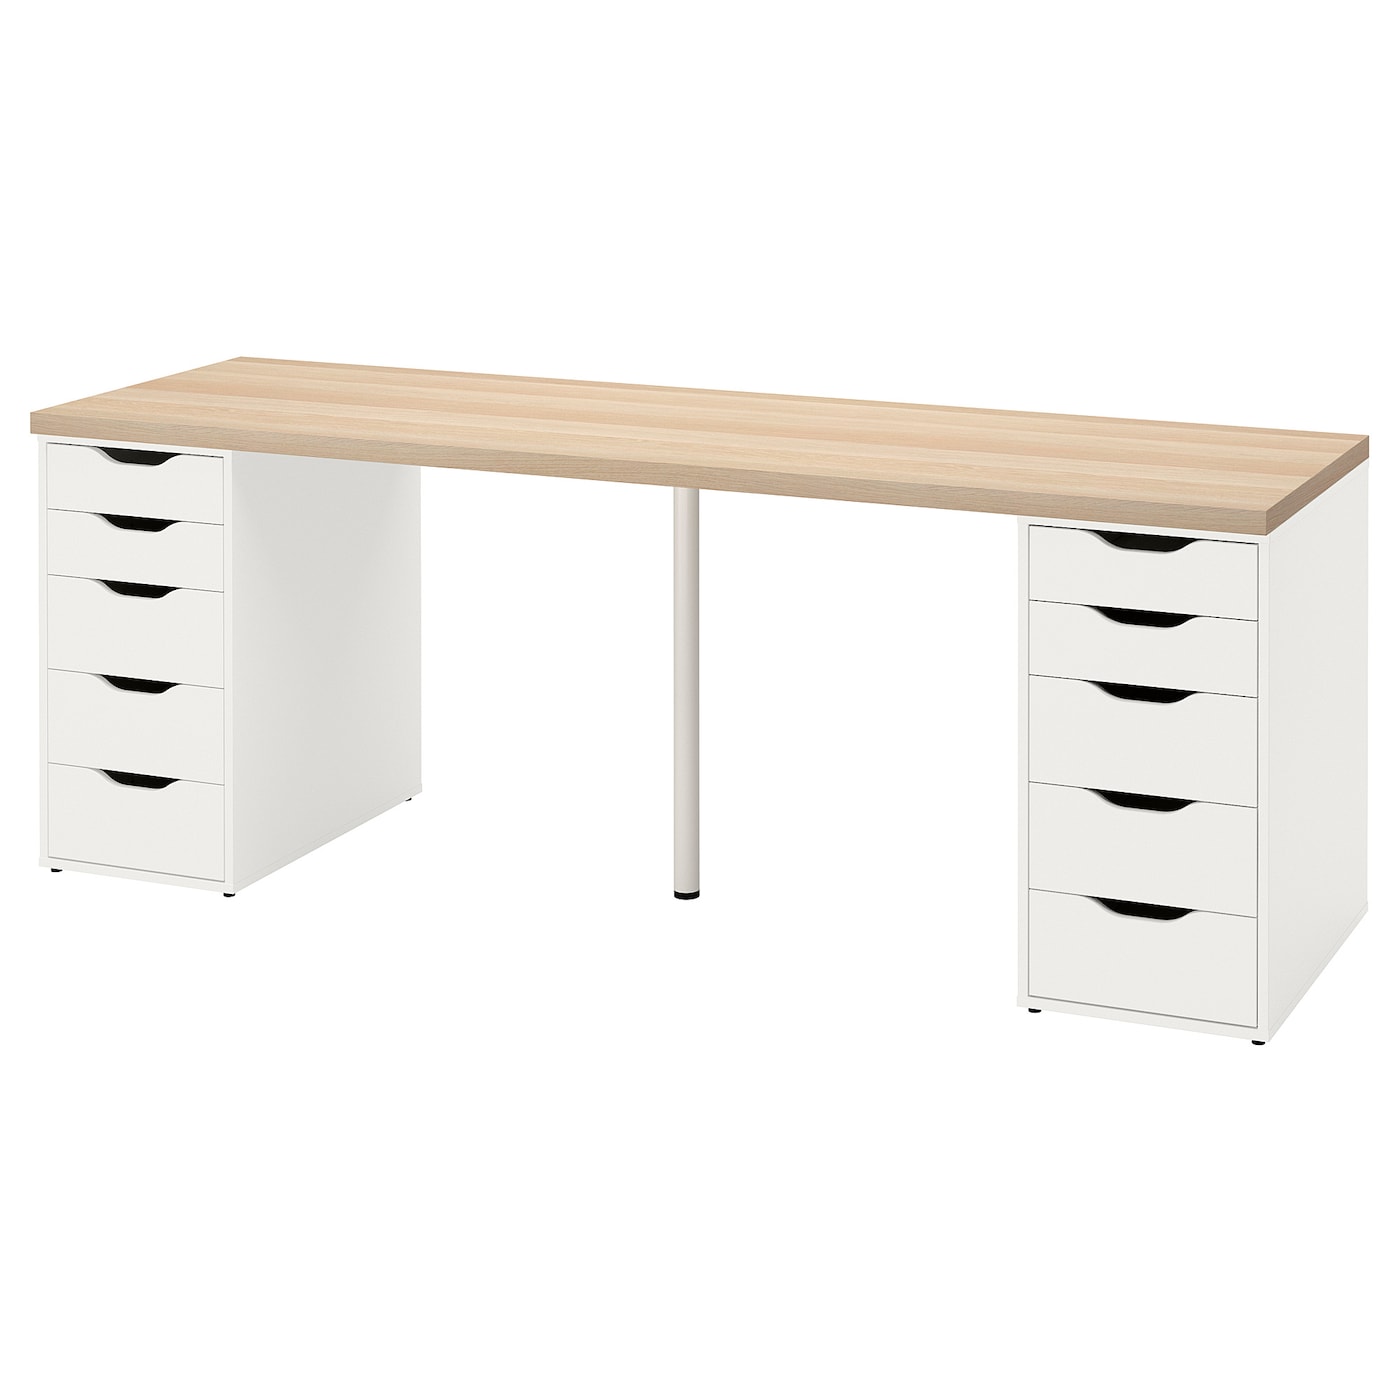 Письменный стол с ящиками - IKEA LAGKAPTEN/ALEX/ЛАГКАПТЕН/АЛЕКС ИКЕА, 200х60 см, под беленый дуб/белый